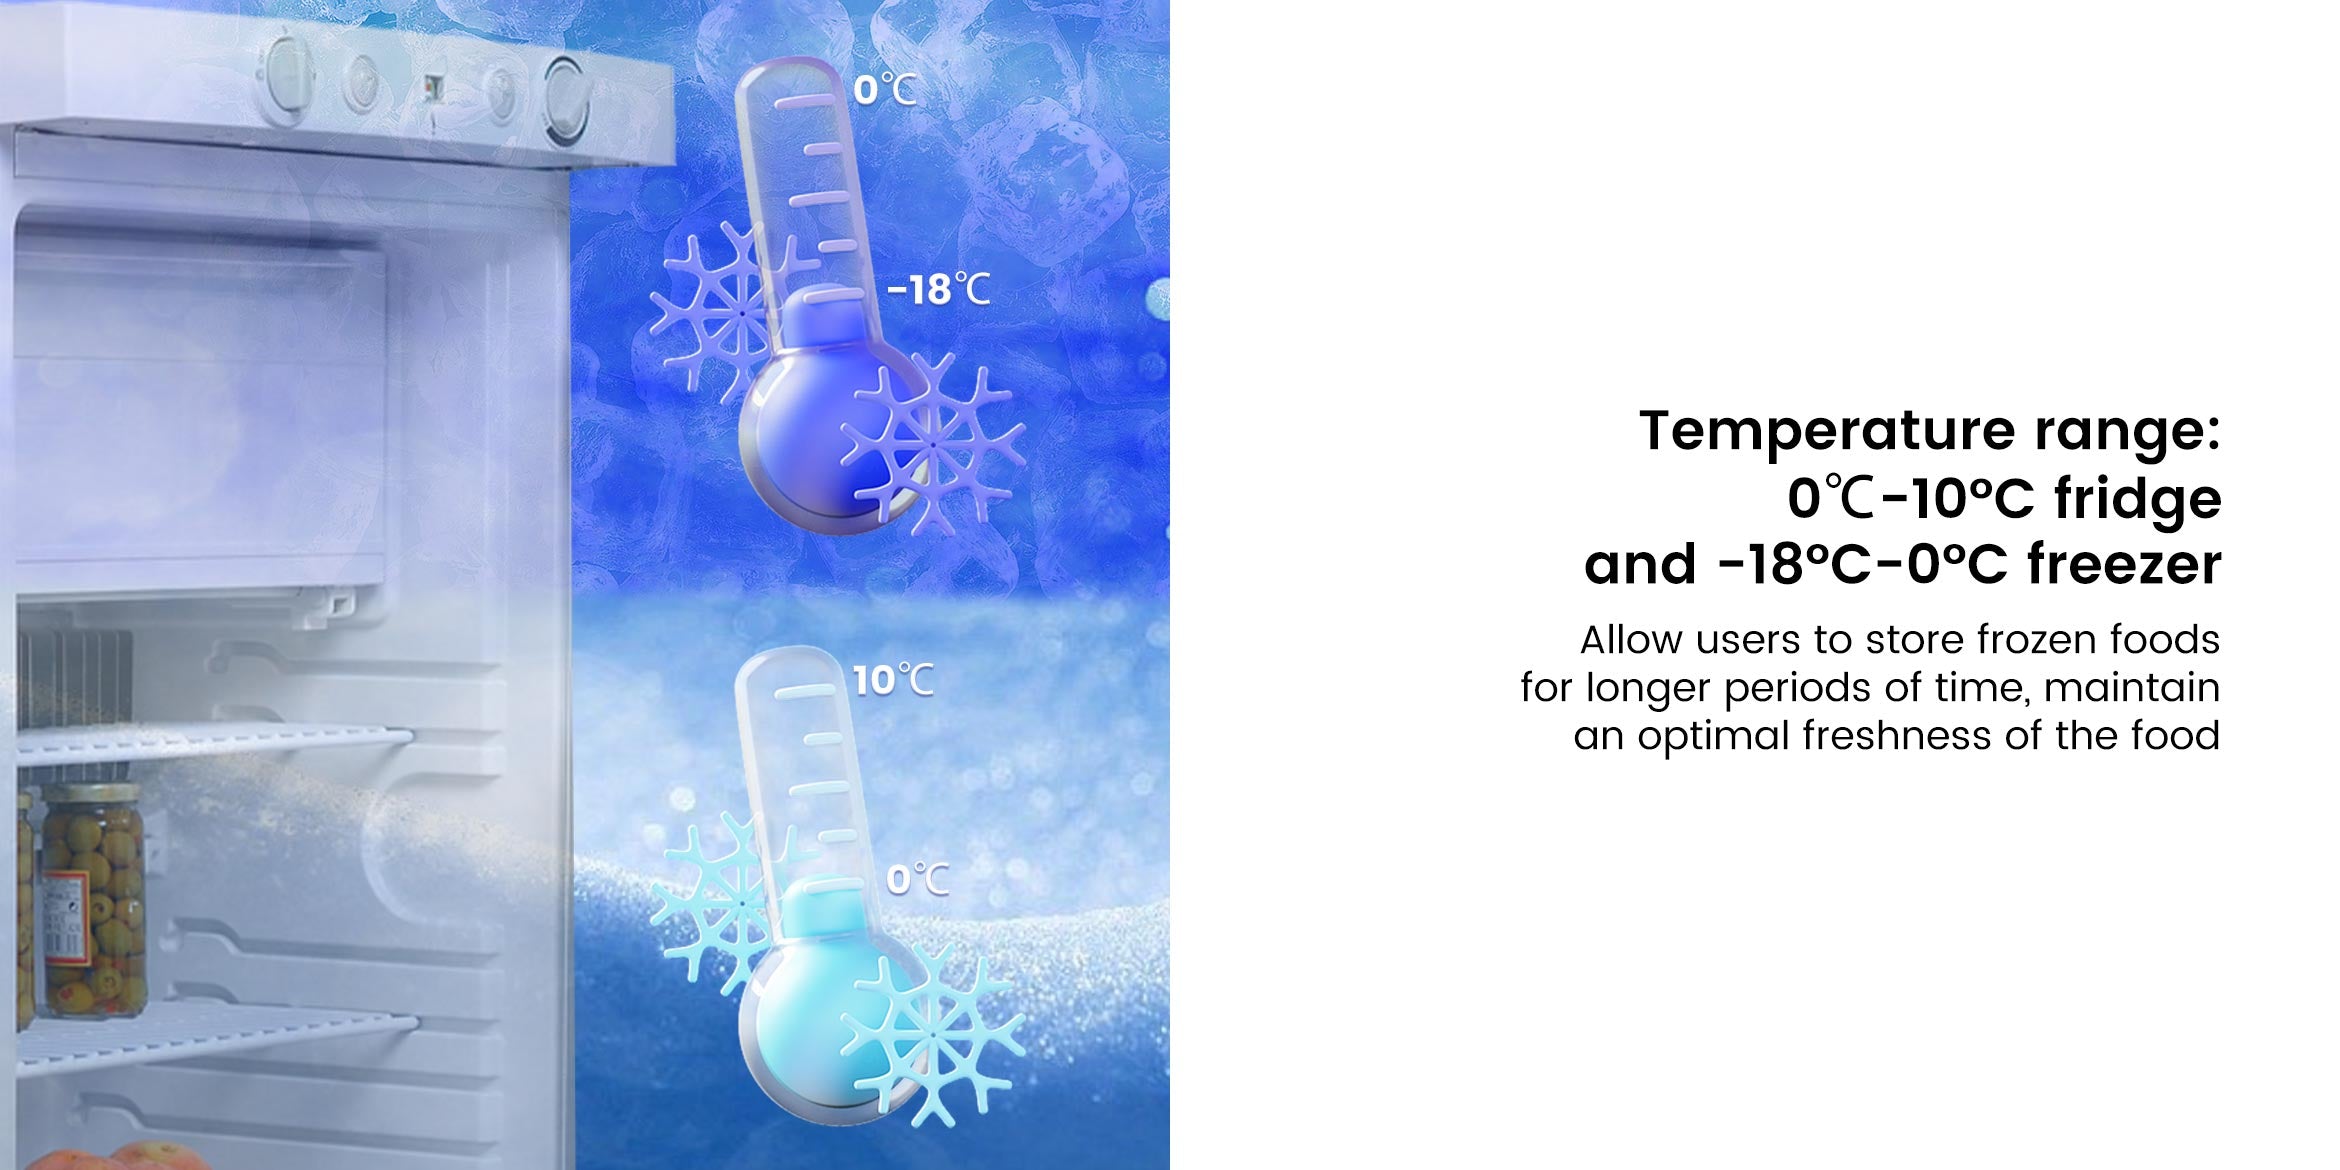 DSG-100L Temperature range 0℃-10°C fridge and -18°C-0°C freezer